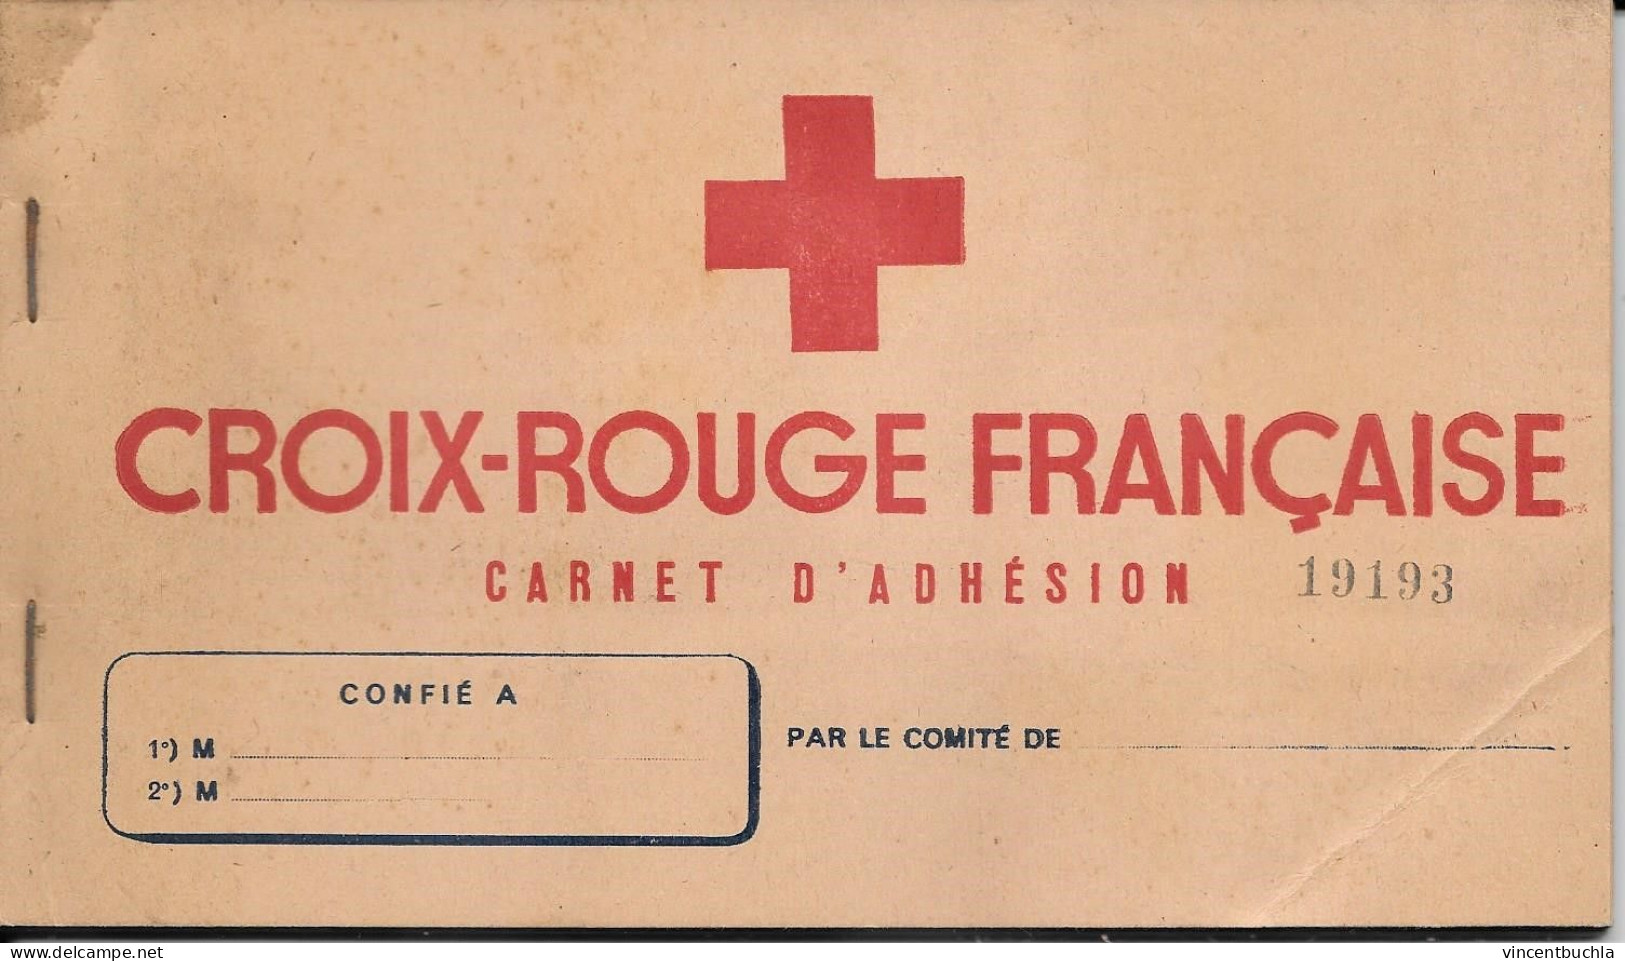 Carnet D'adhésion Croix Rouge Française 1946 20 Carte Avec Bordereau Récapitulatif Etat Proche Du Neuf N°19193 - Croix-Rouge